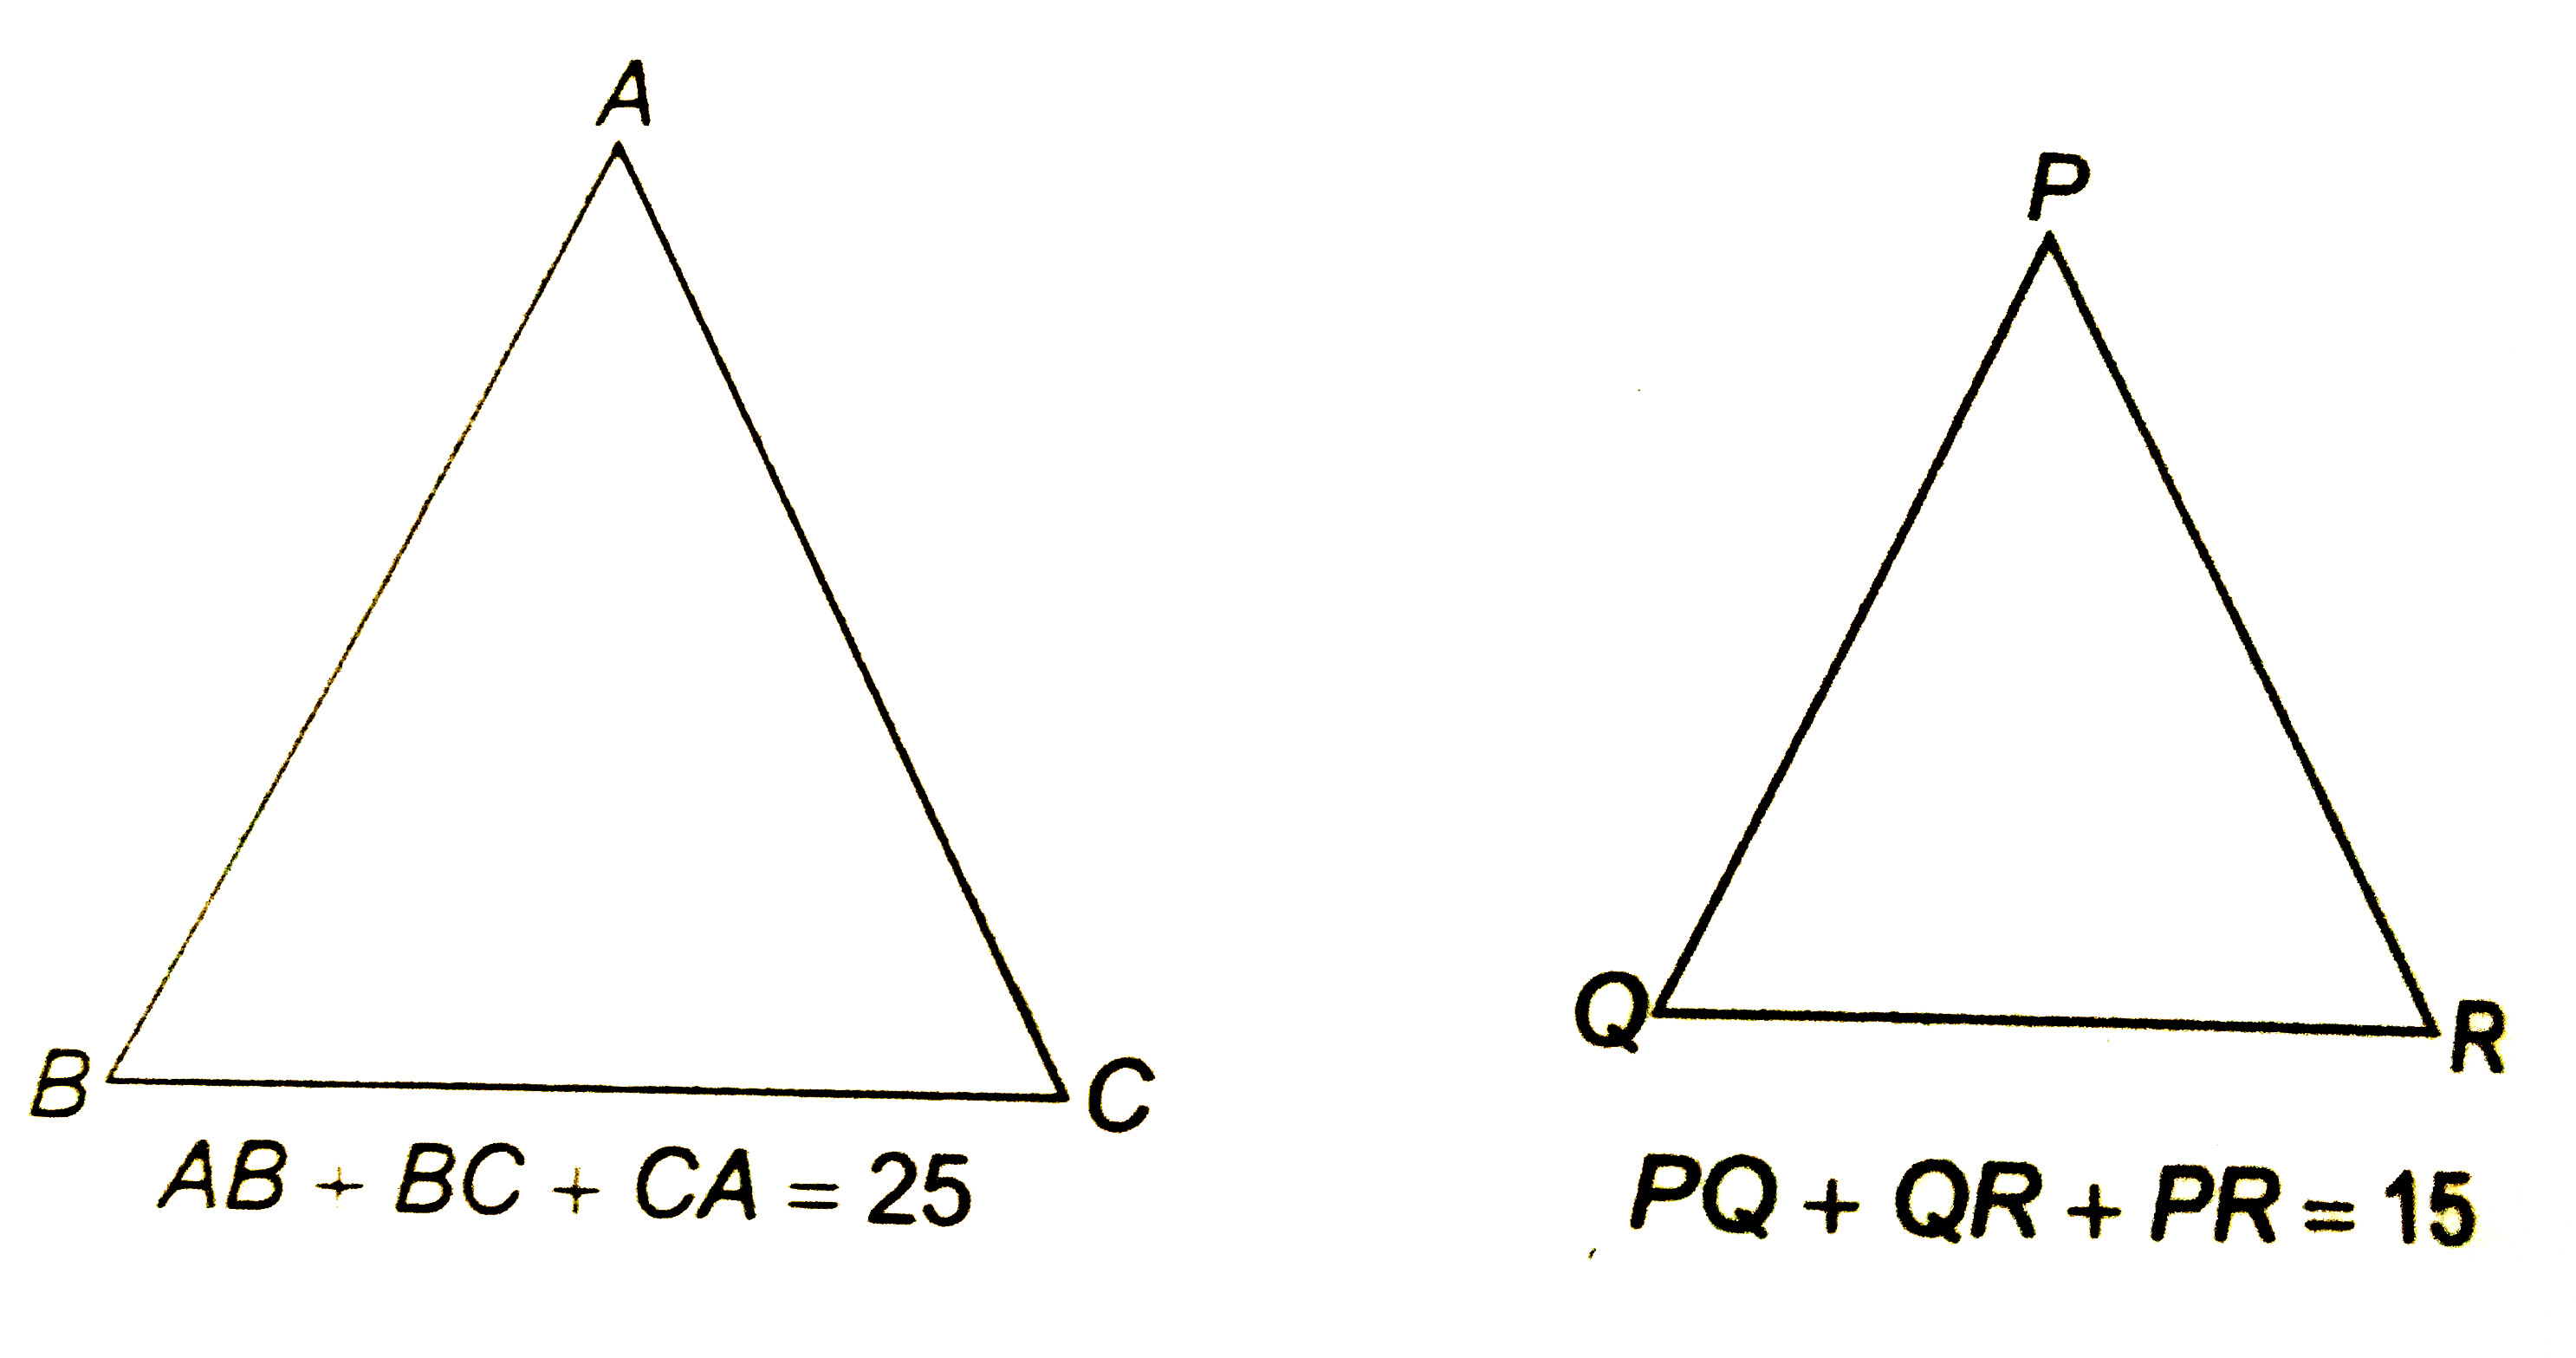 दो समरूप त्रिभुजों के परिमाप क्रमशः 25 सेमी और  15 सेमी है यदि पहले त्रिभुज की एक भुजा  9 सेमी है तो दूसरे त्रिभुज की संगत भुजा ज्ञात कीजिये